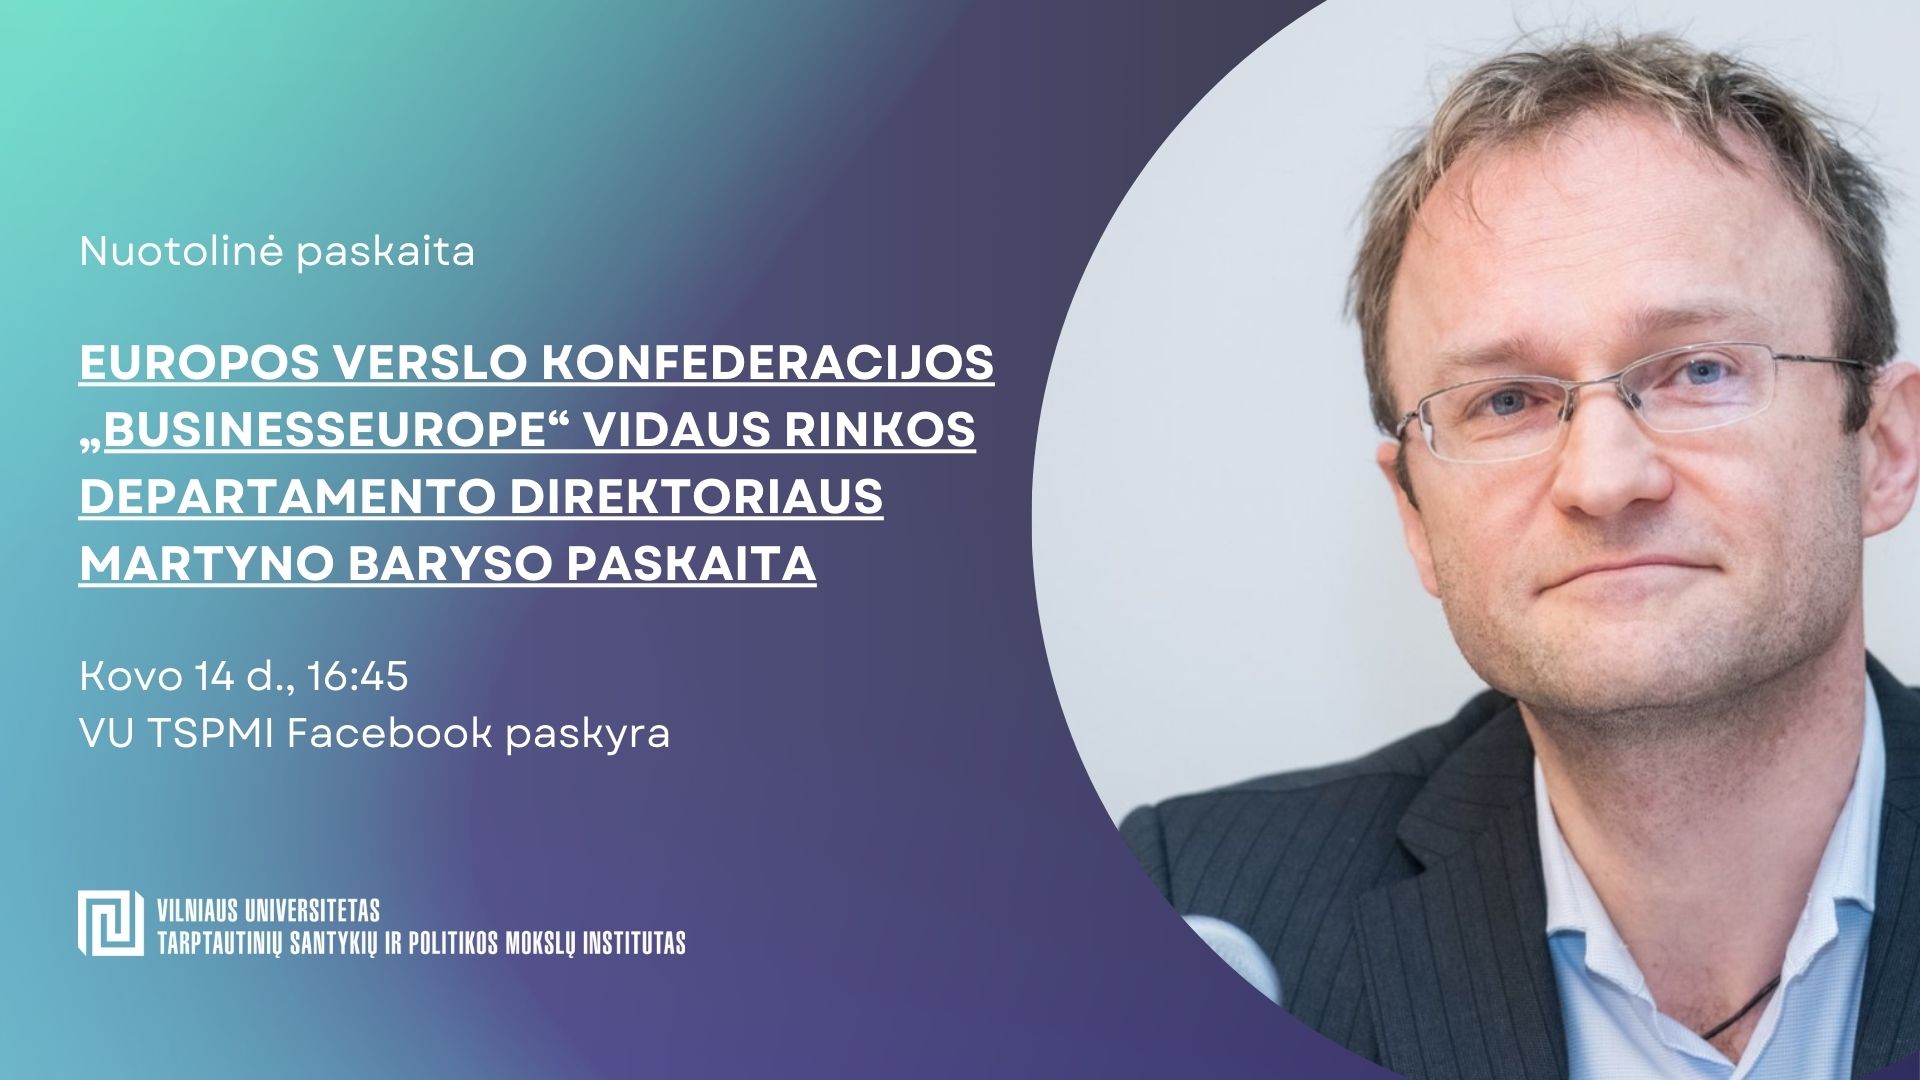 „BusinessEurope“ vidaus rinkos departamento direktoriaus Martyno Baryso nuotolinė paskaita